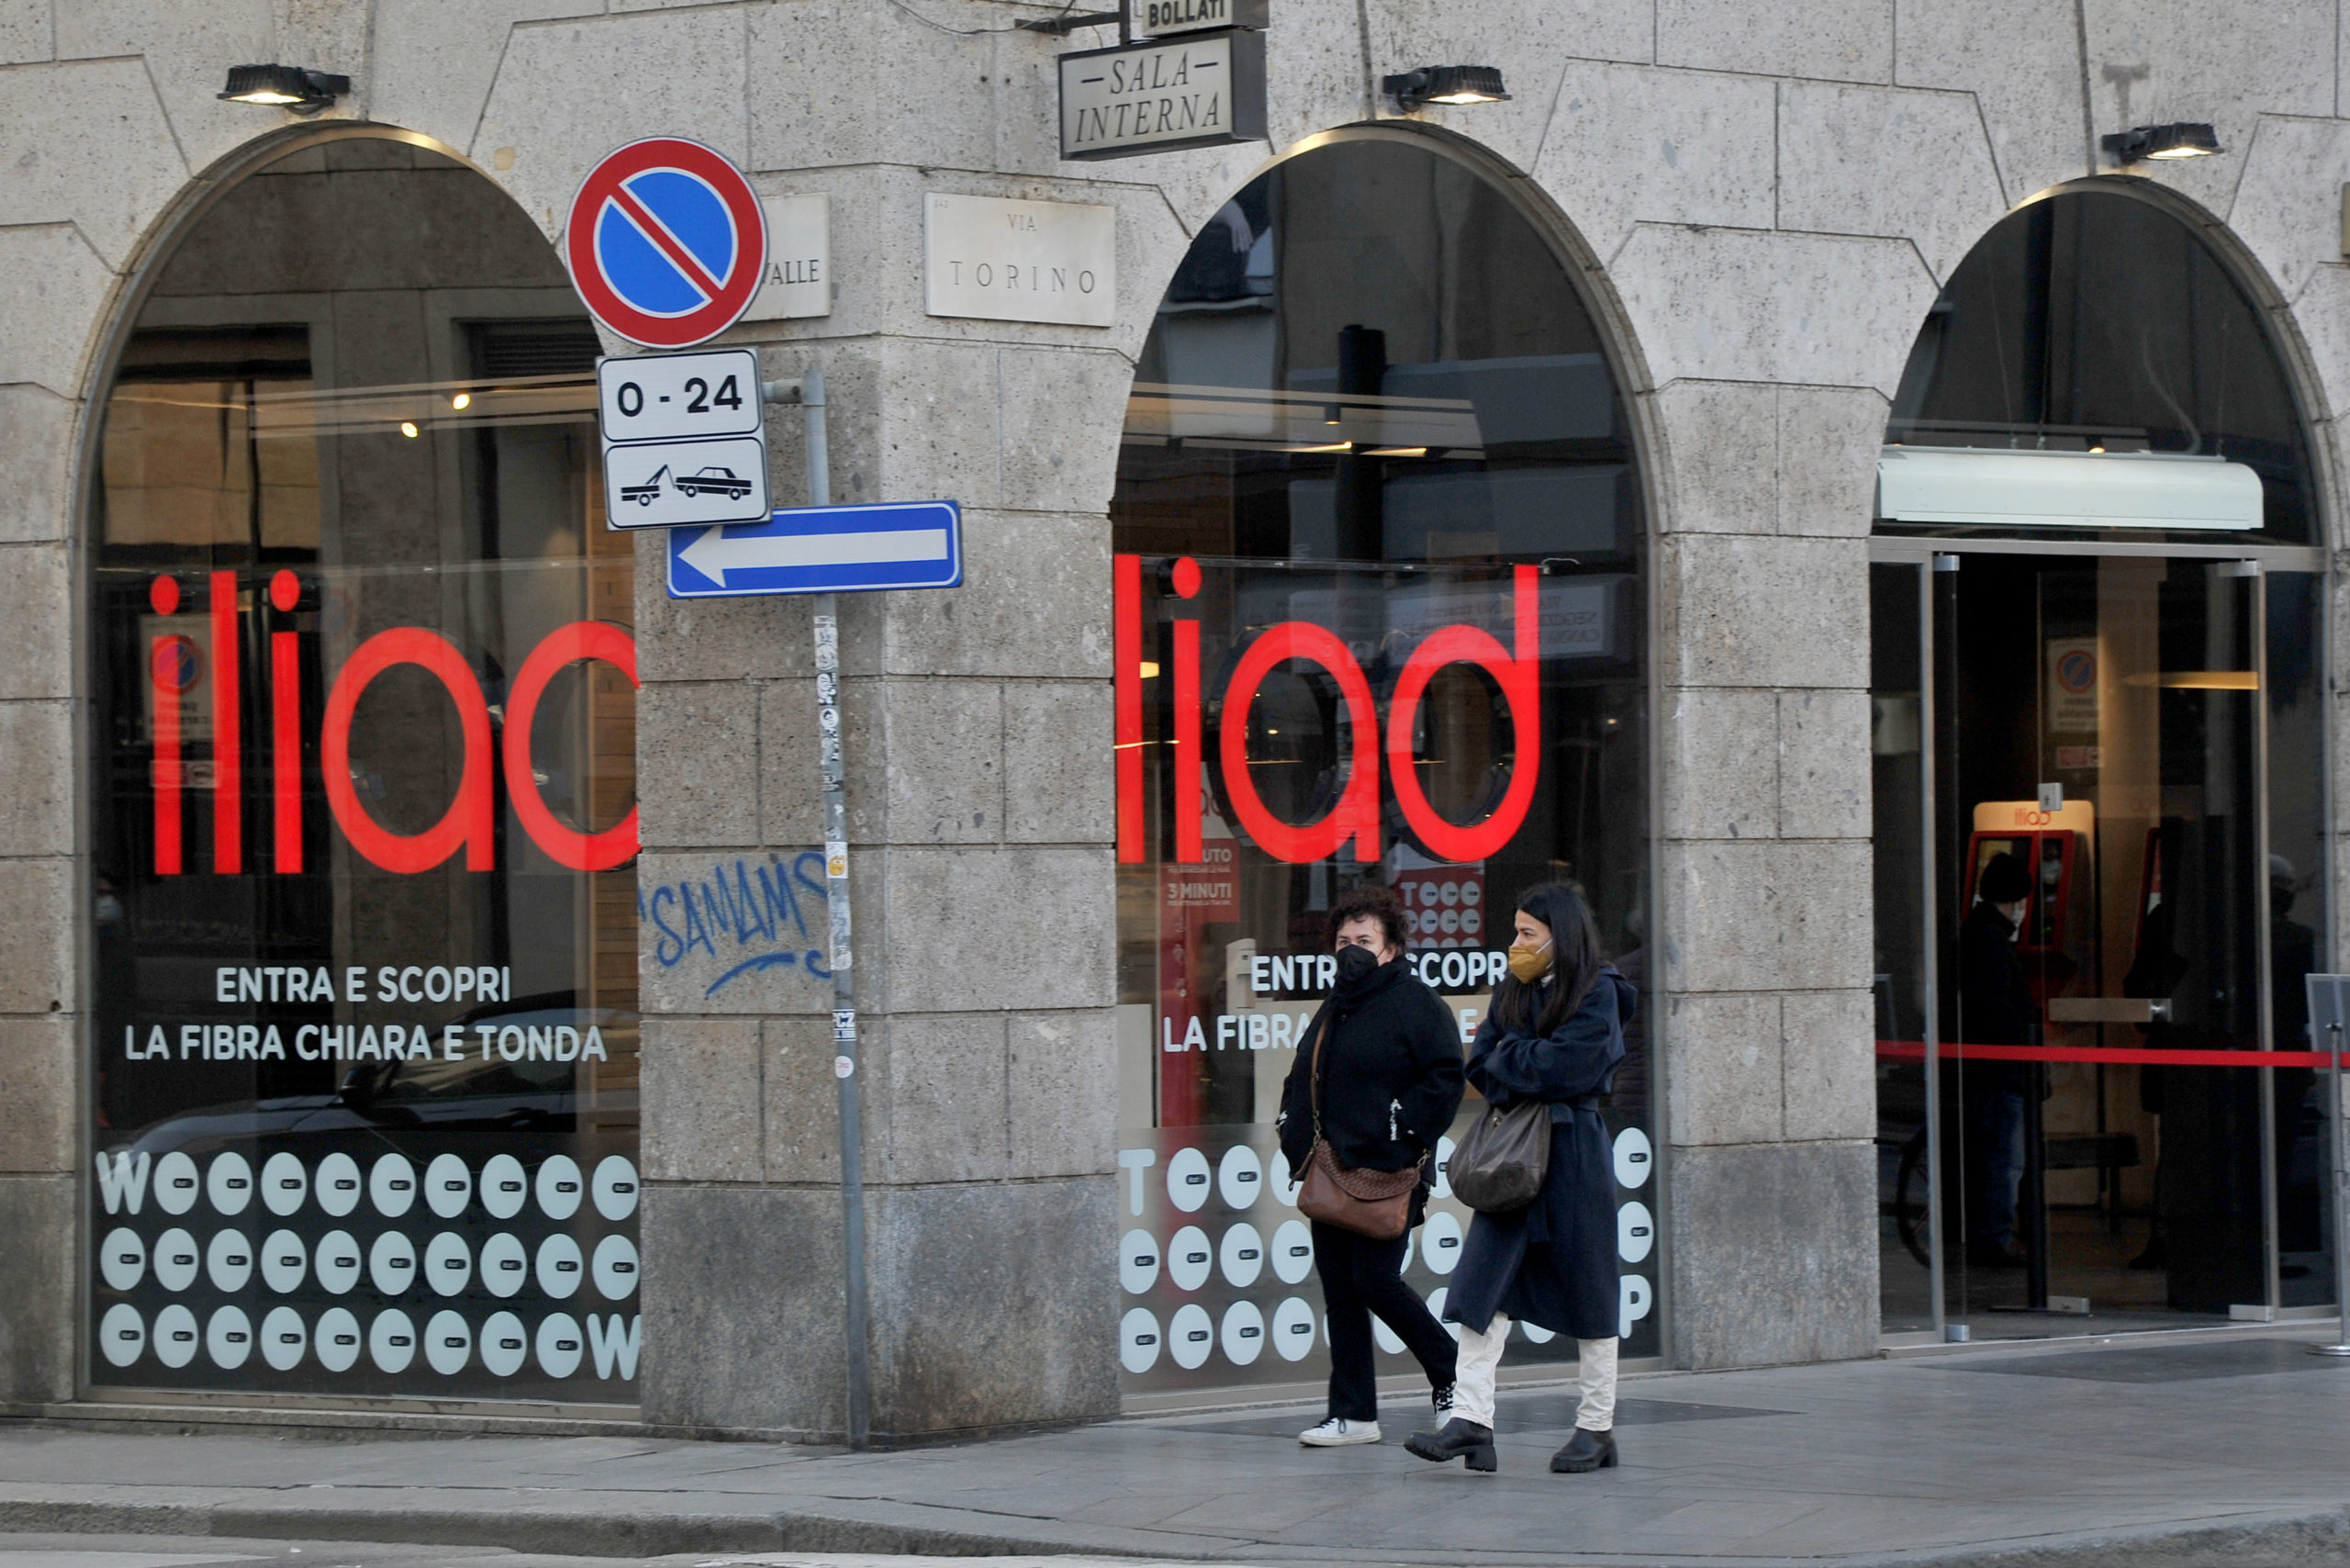 Iliad si conferma leader nel mercato italiano del mobile